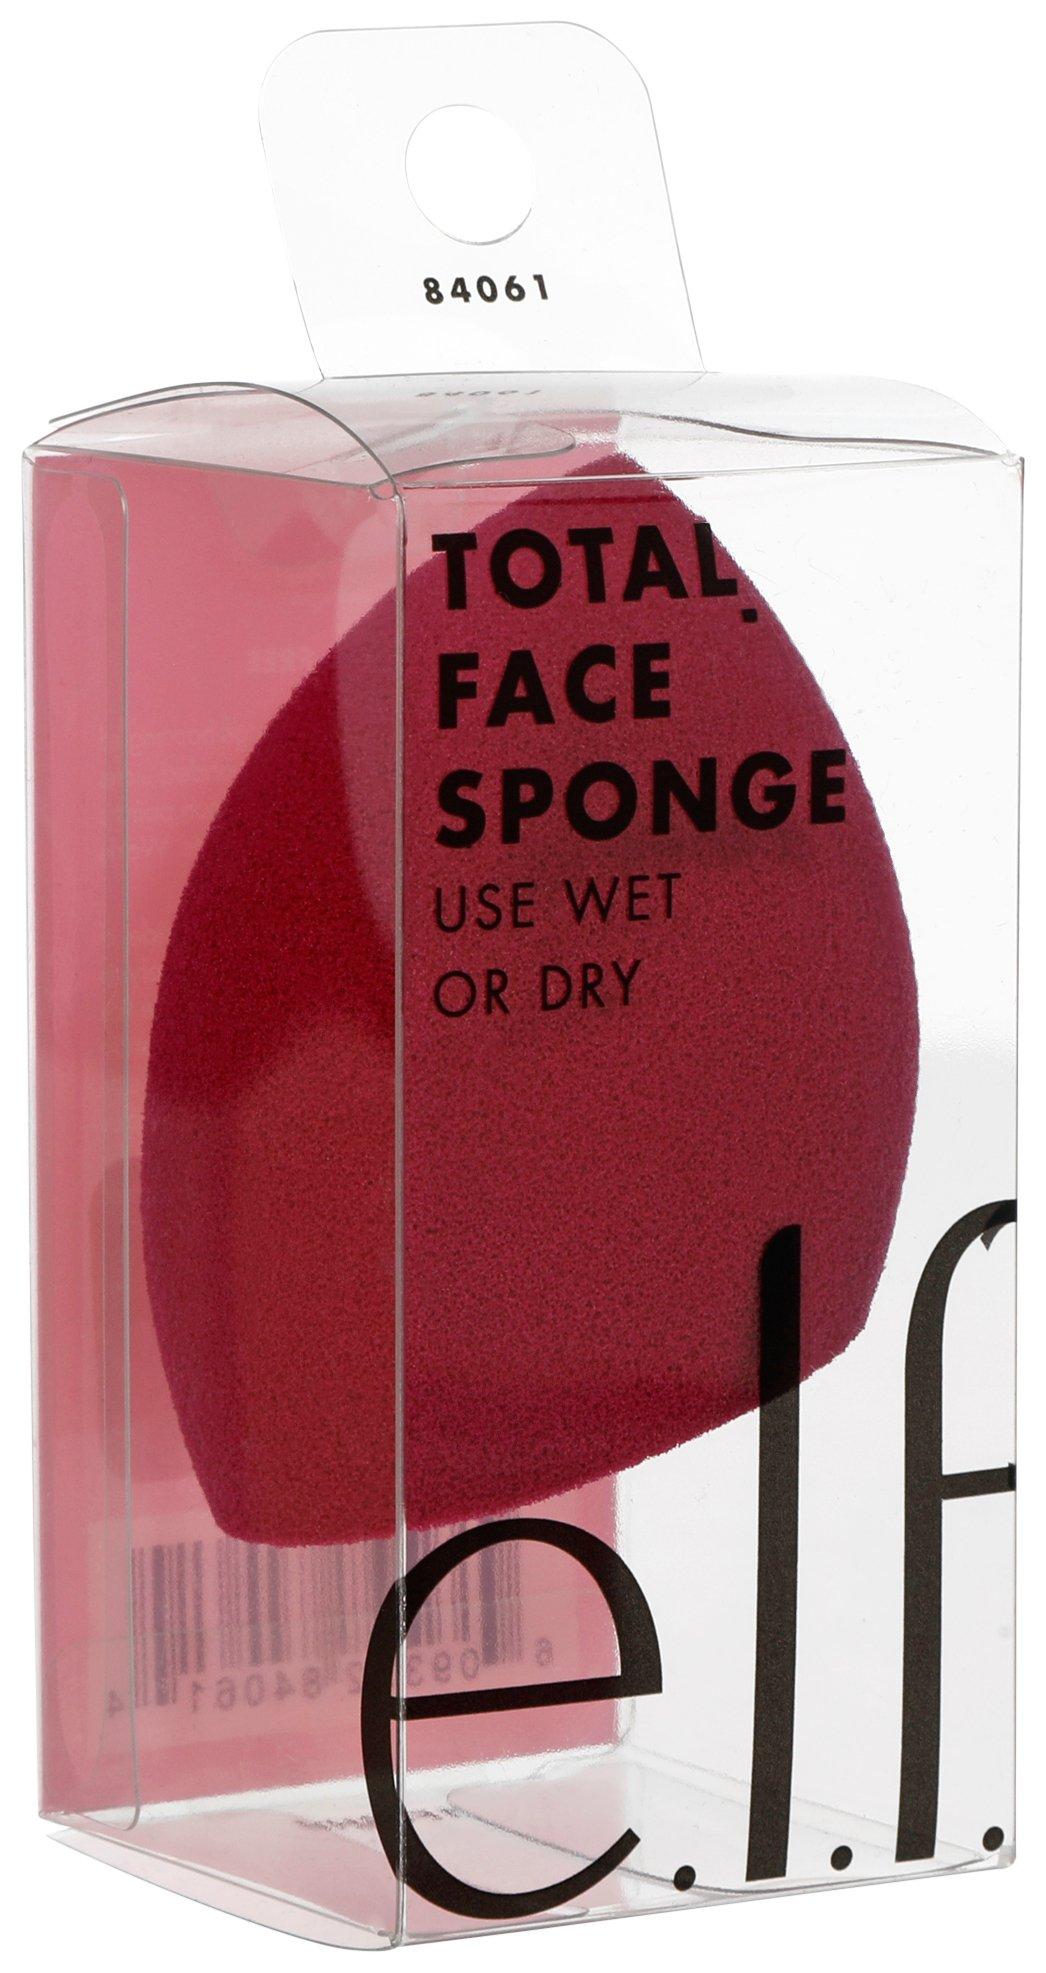 Elf Total Face Wet & Dry Blending Sponge